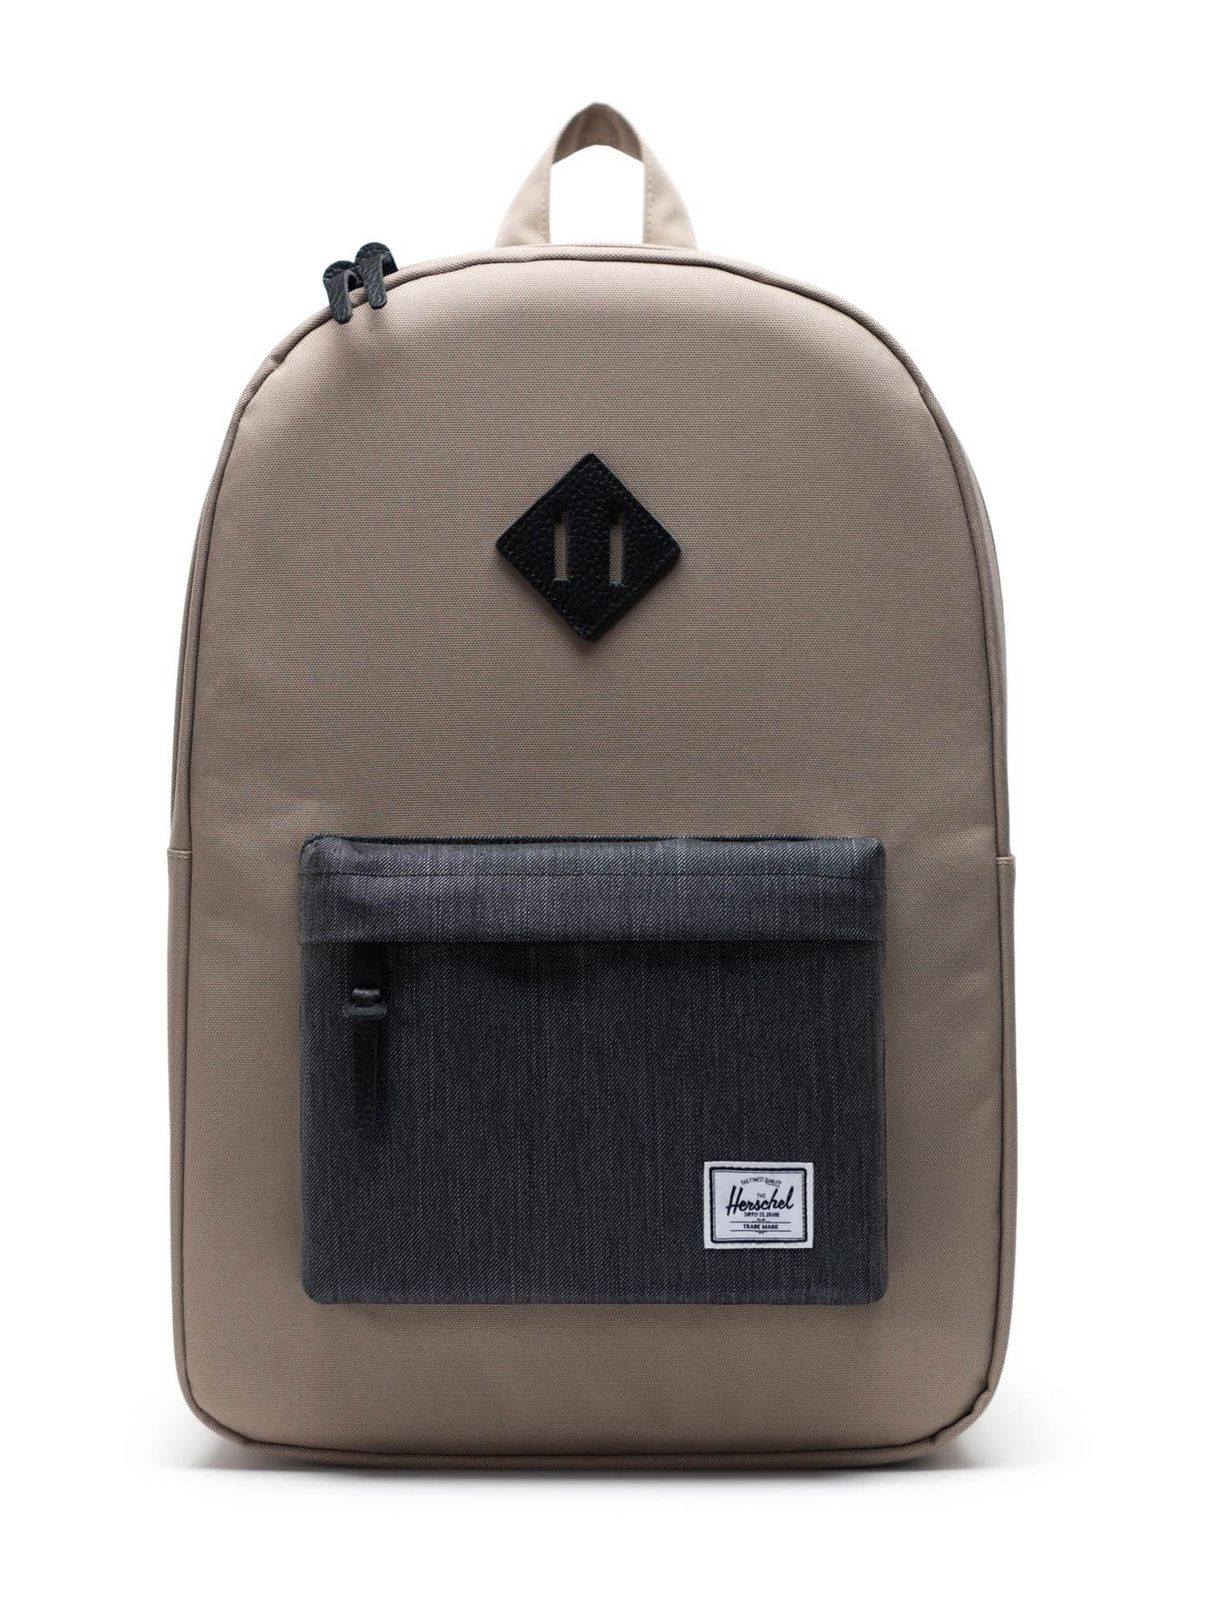 Herschel Backpack Timberwolf / Black Denim | Buy bags, purses ...